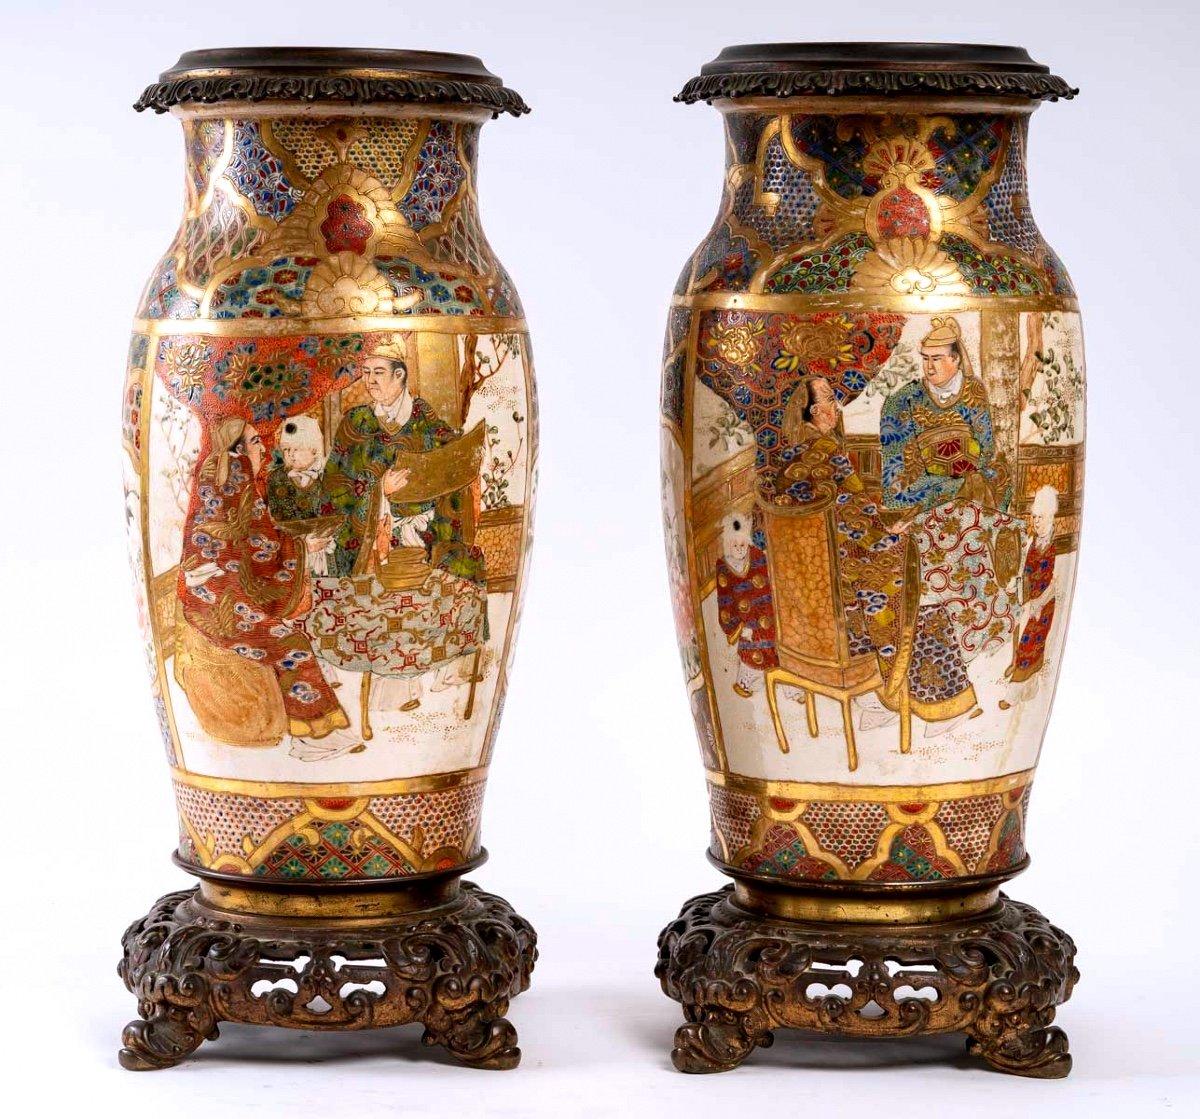 Elegante paire de vases ovoïdes en céramique montés sur bronze français, décorés d'émaux polychromes en relief et d'or pur sur fond blanc.
Le corps est décoré de grands cartouches représentant de hauts dignitaires dans des intérieurs. 

Les